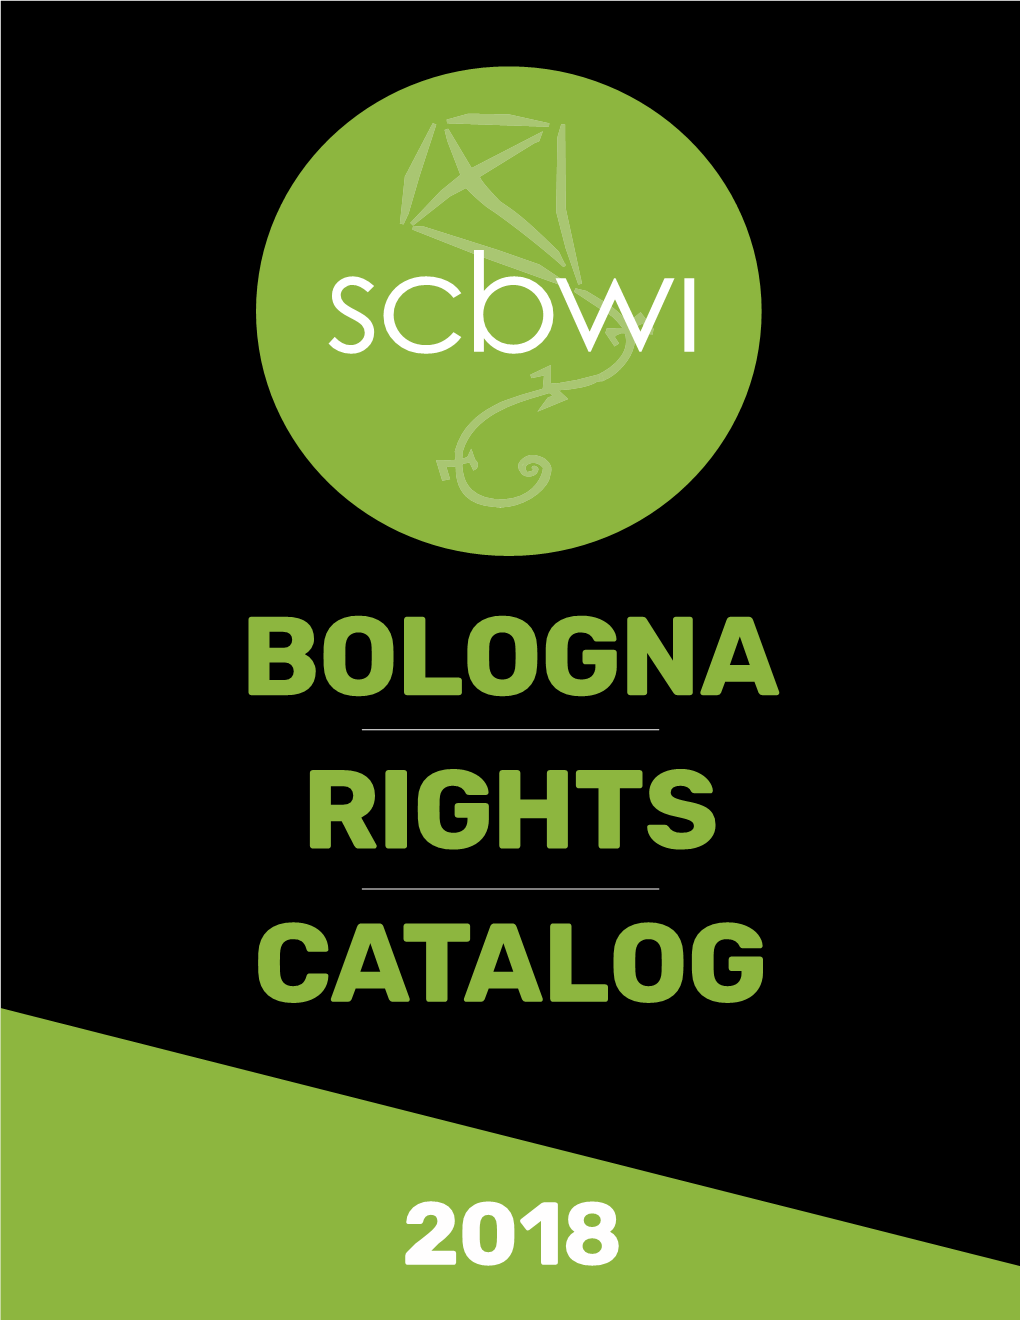 SCBWI Bologna Rights Catalog